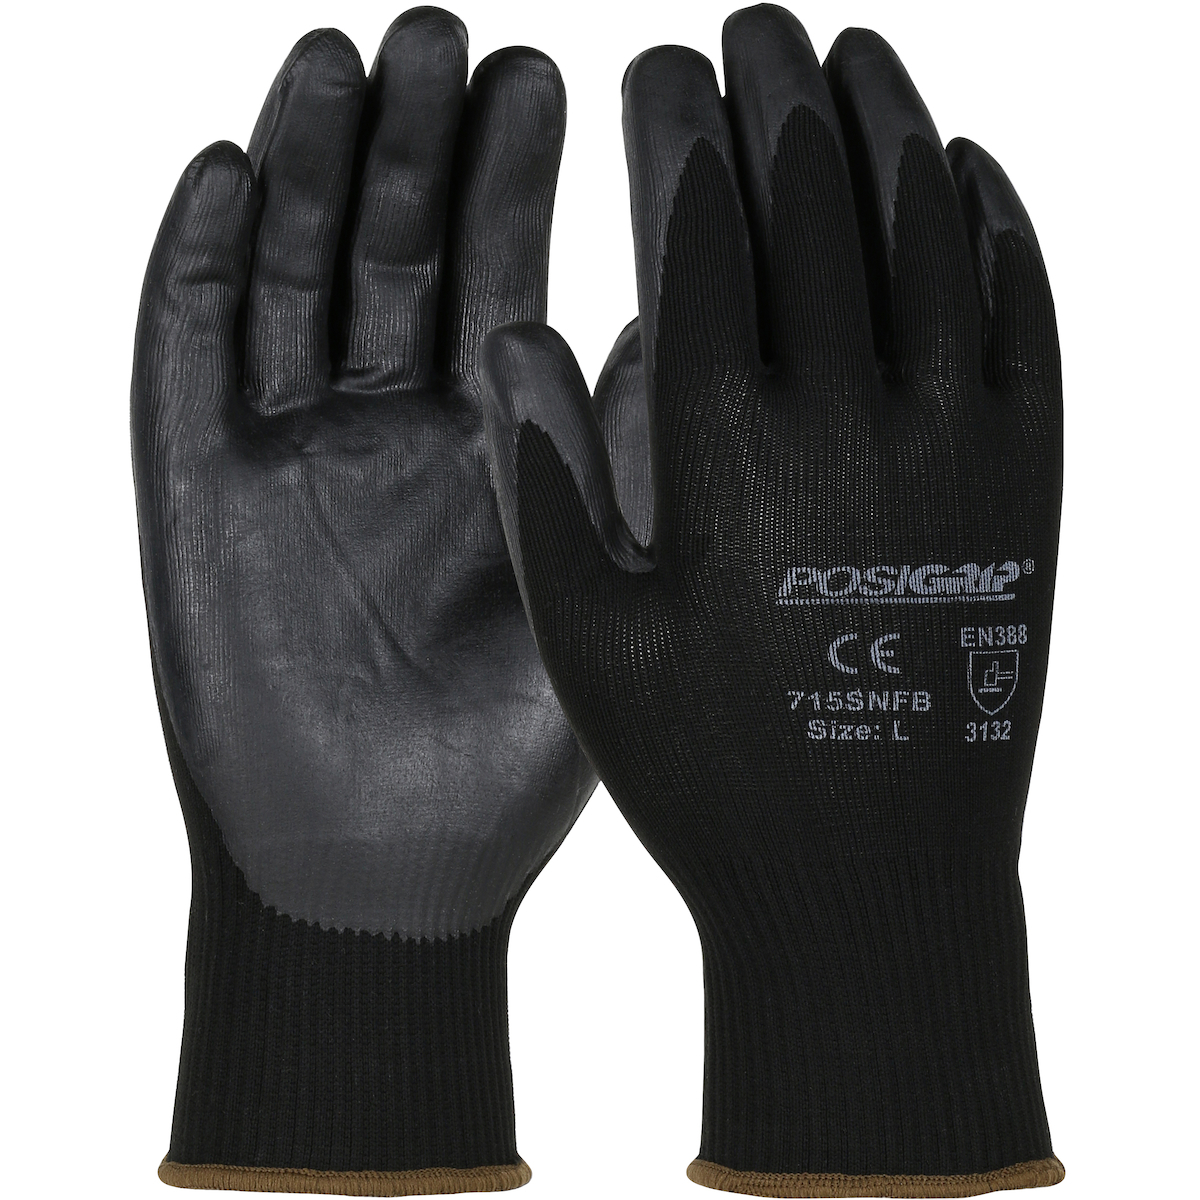 3x Pair Leather Welders Gloves 3 Finger Work Gloves Size 10 Spider 